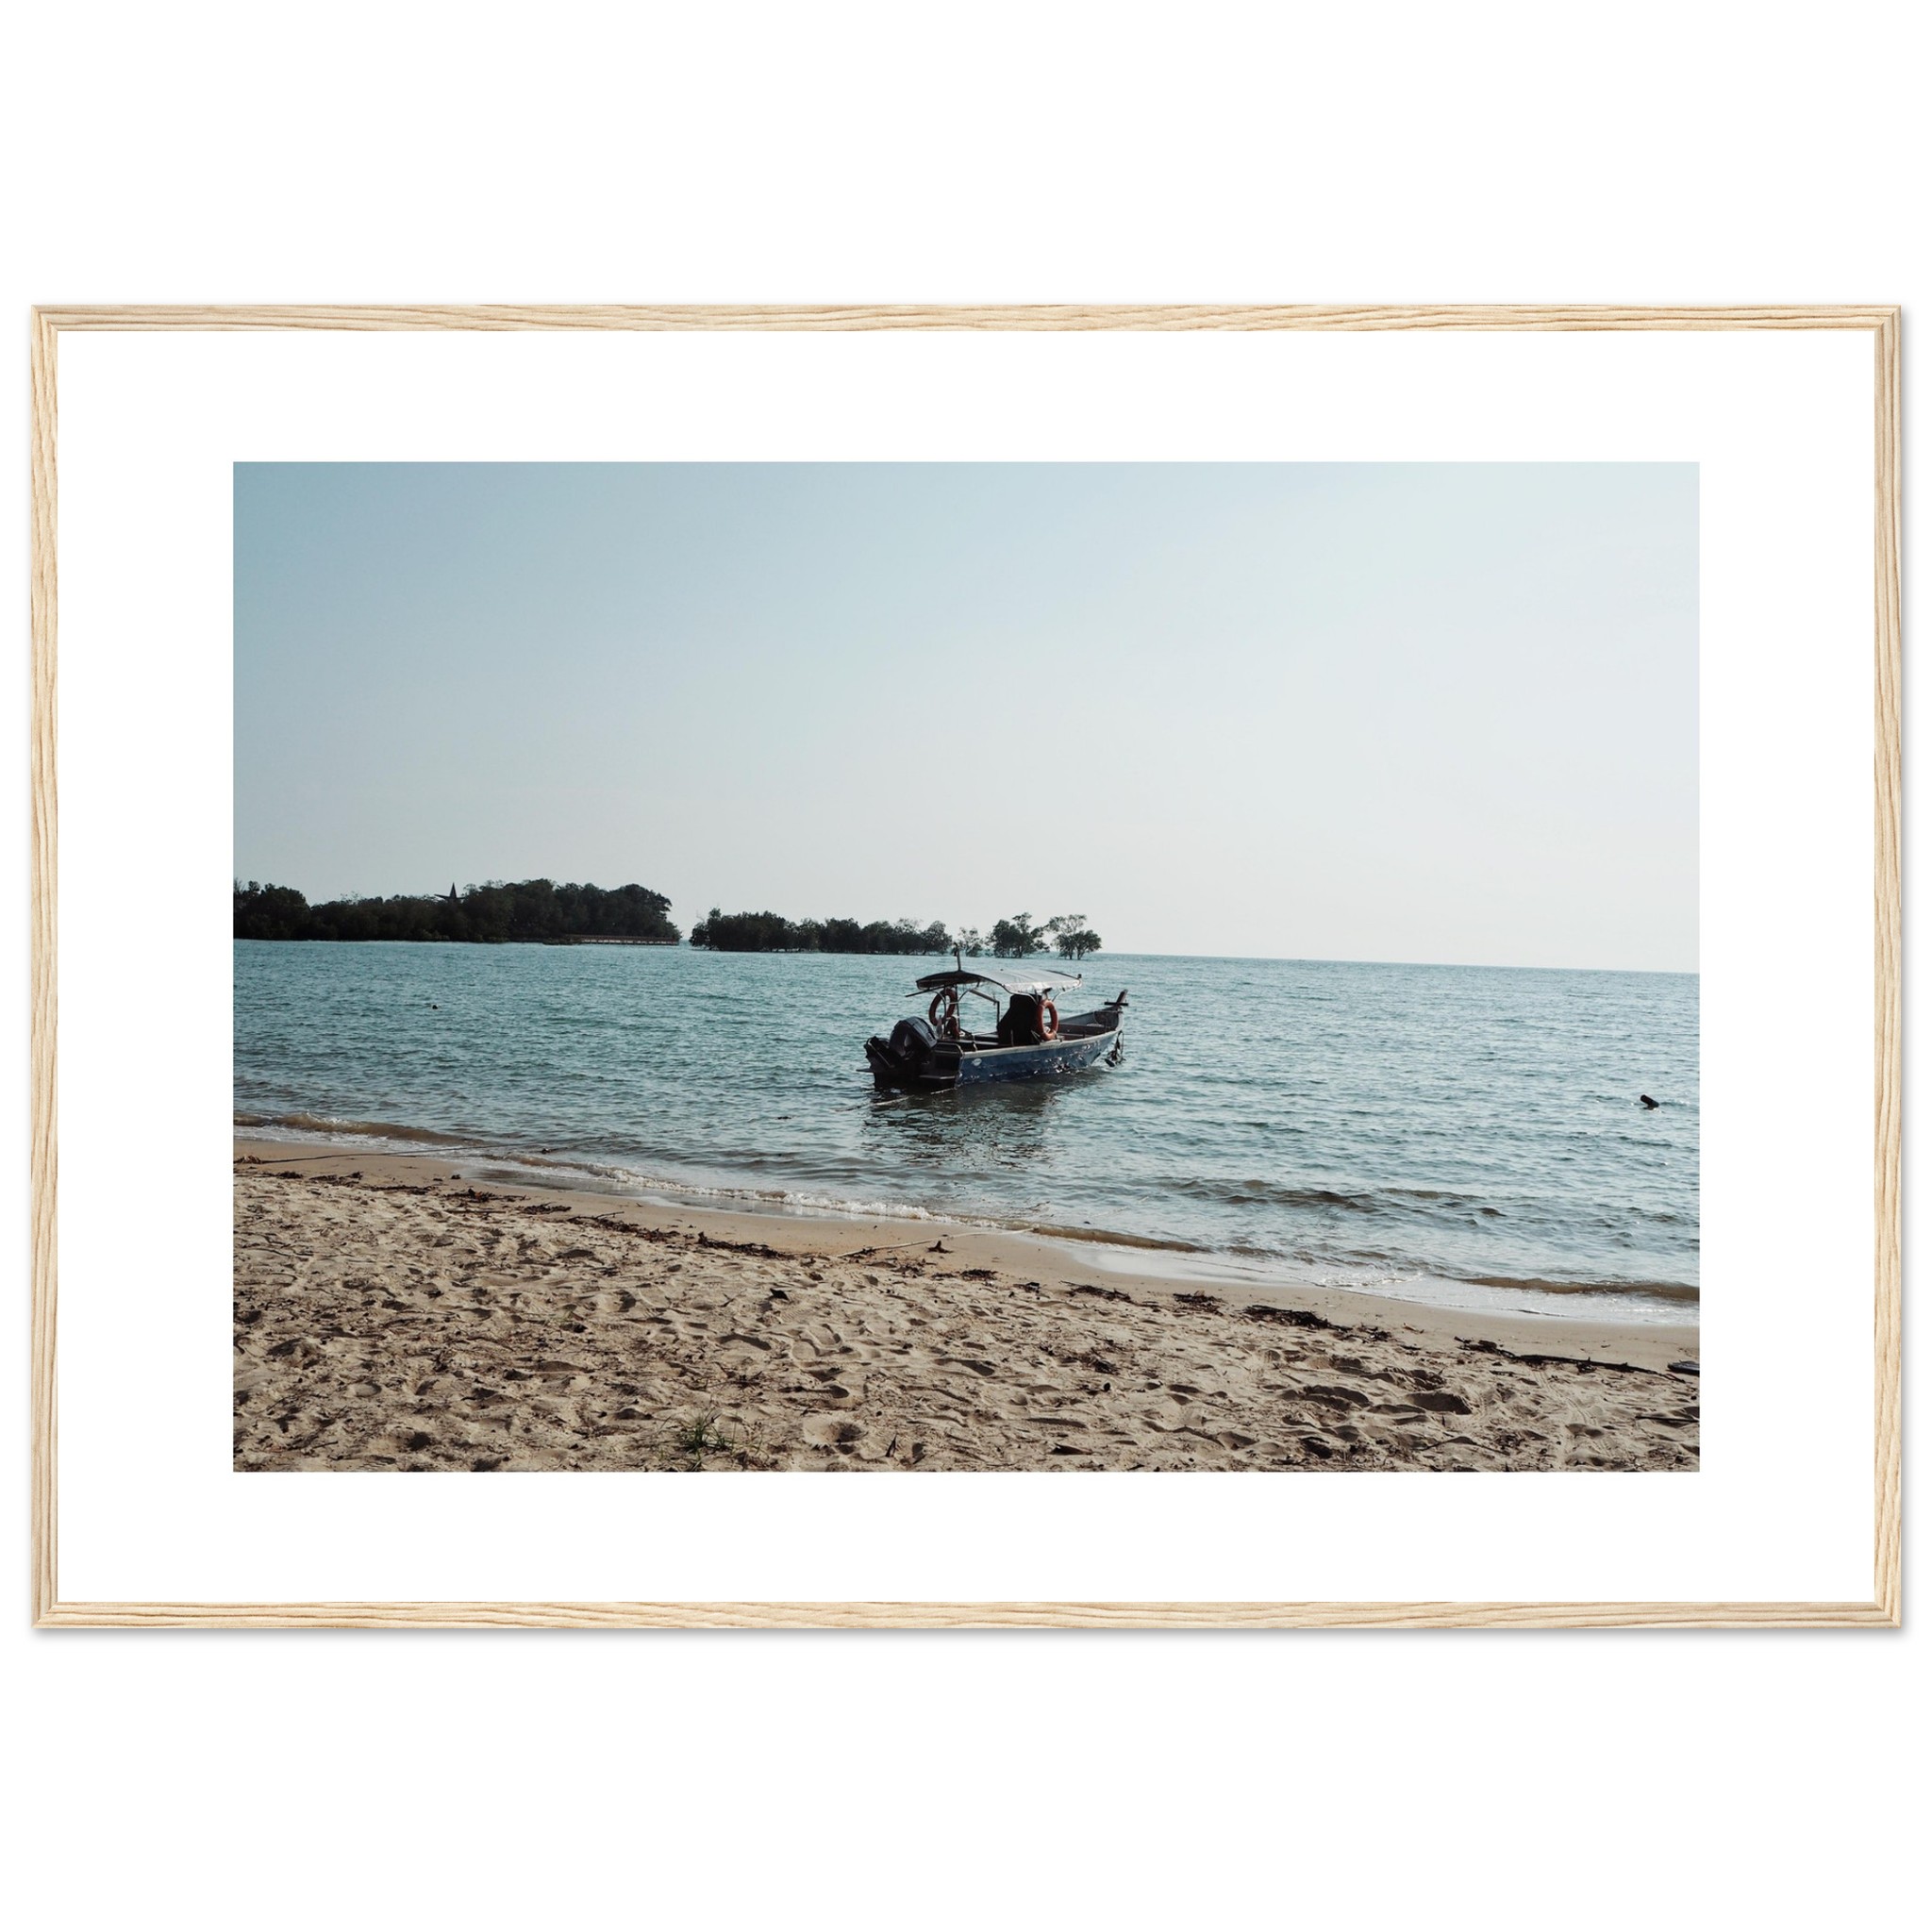 The Boat Landscape Framed Travel Print